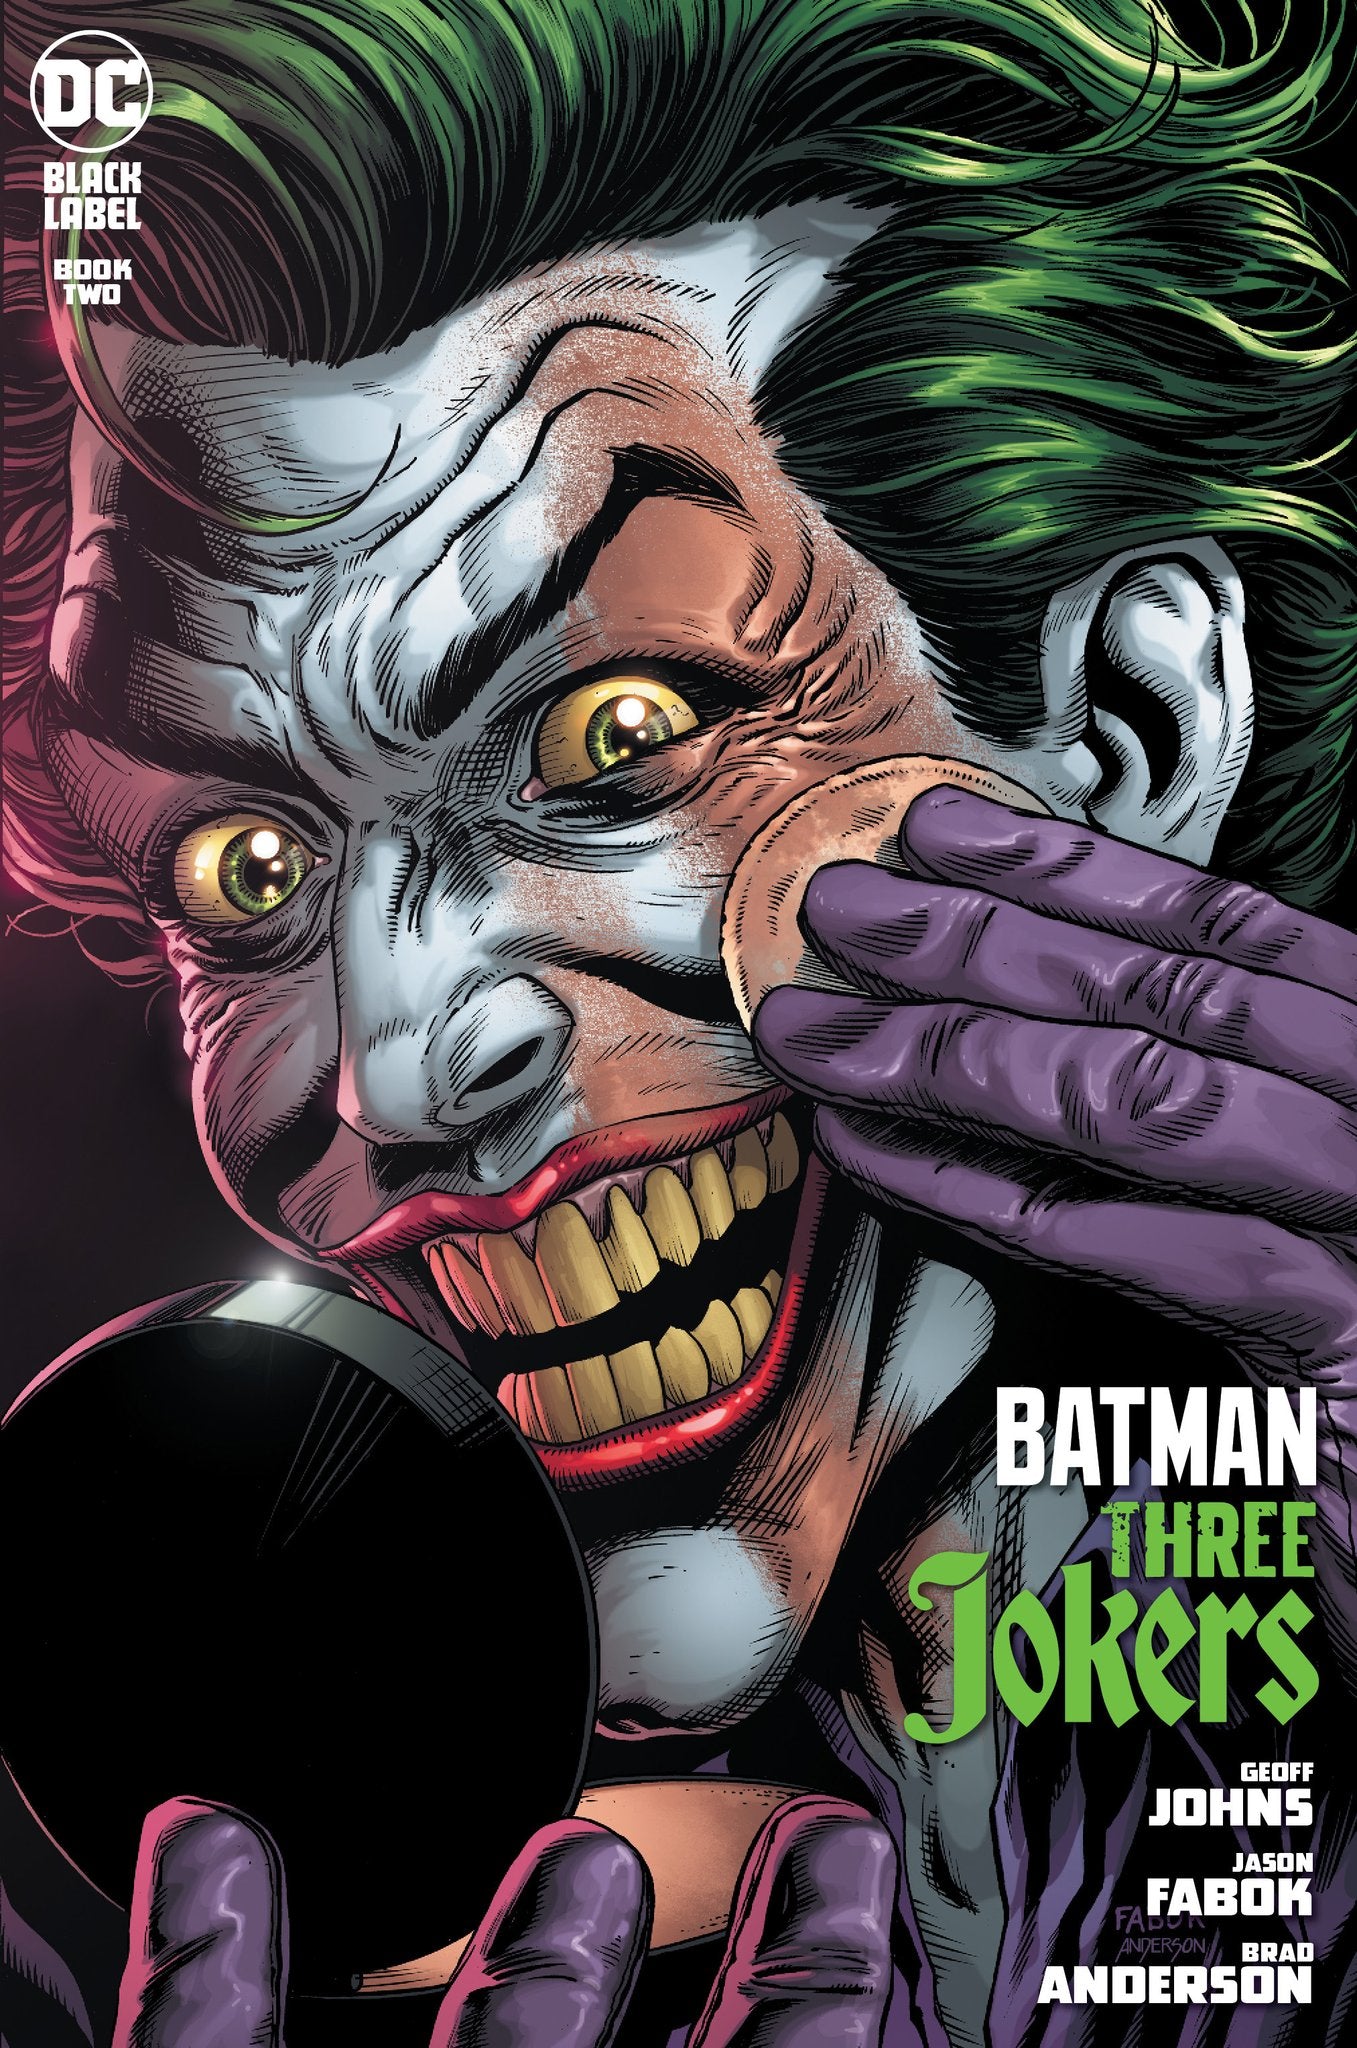 BATMAN THREE JOKERS #2 (OF 3) Premium Cover F - MAKEUP